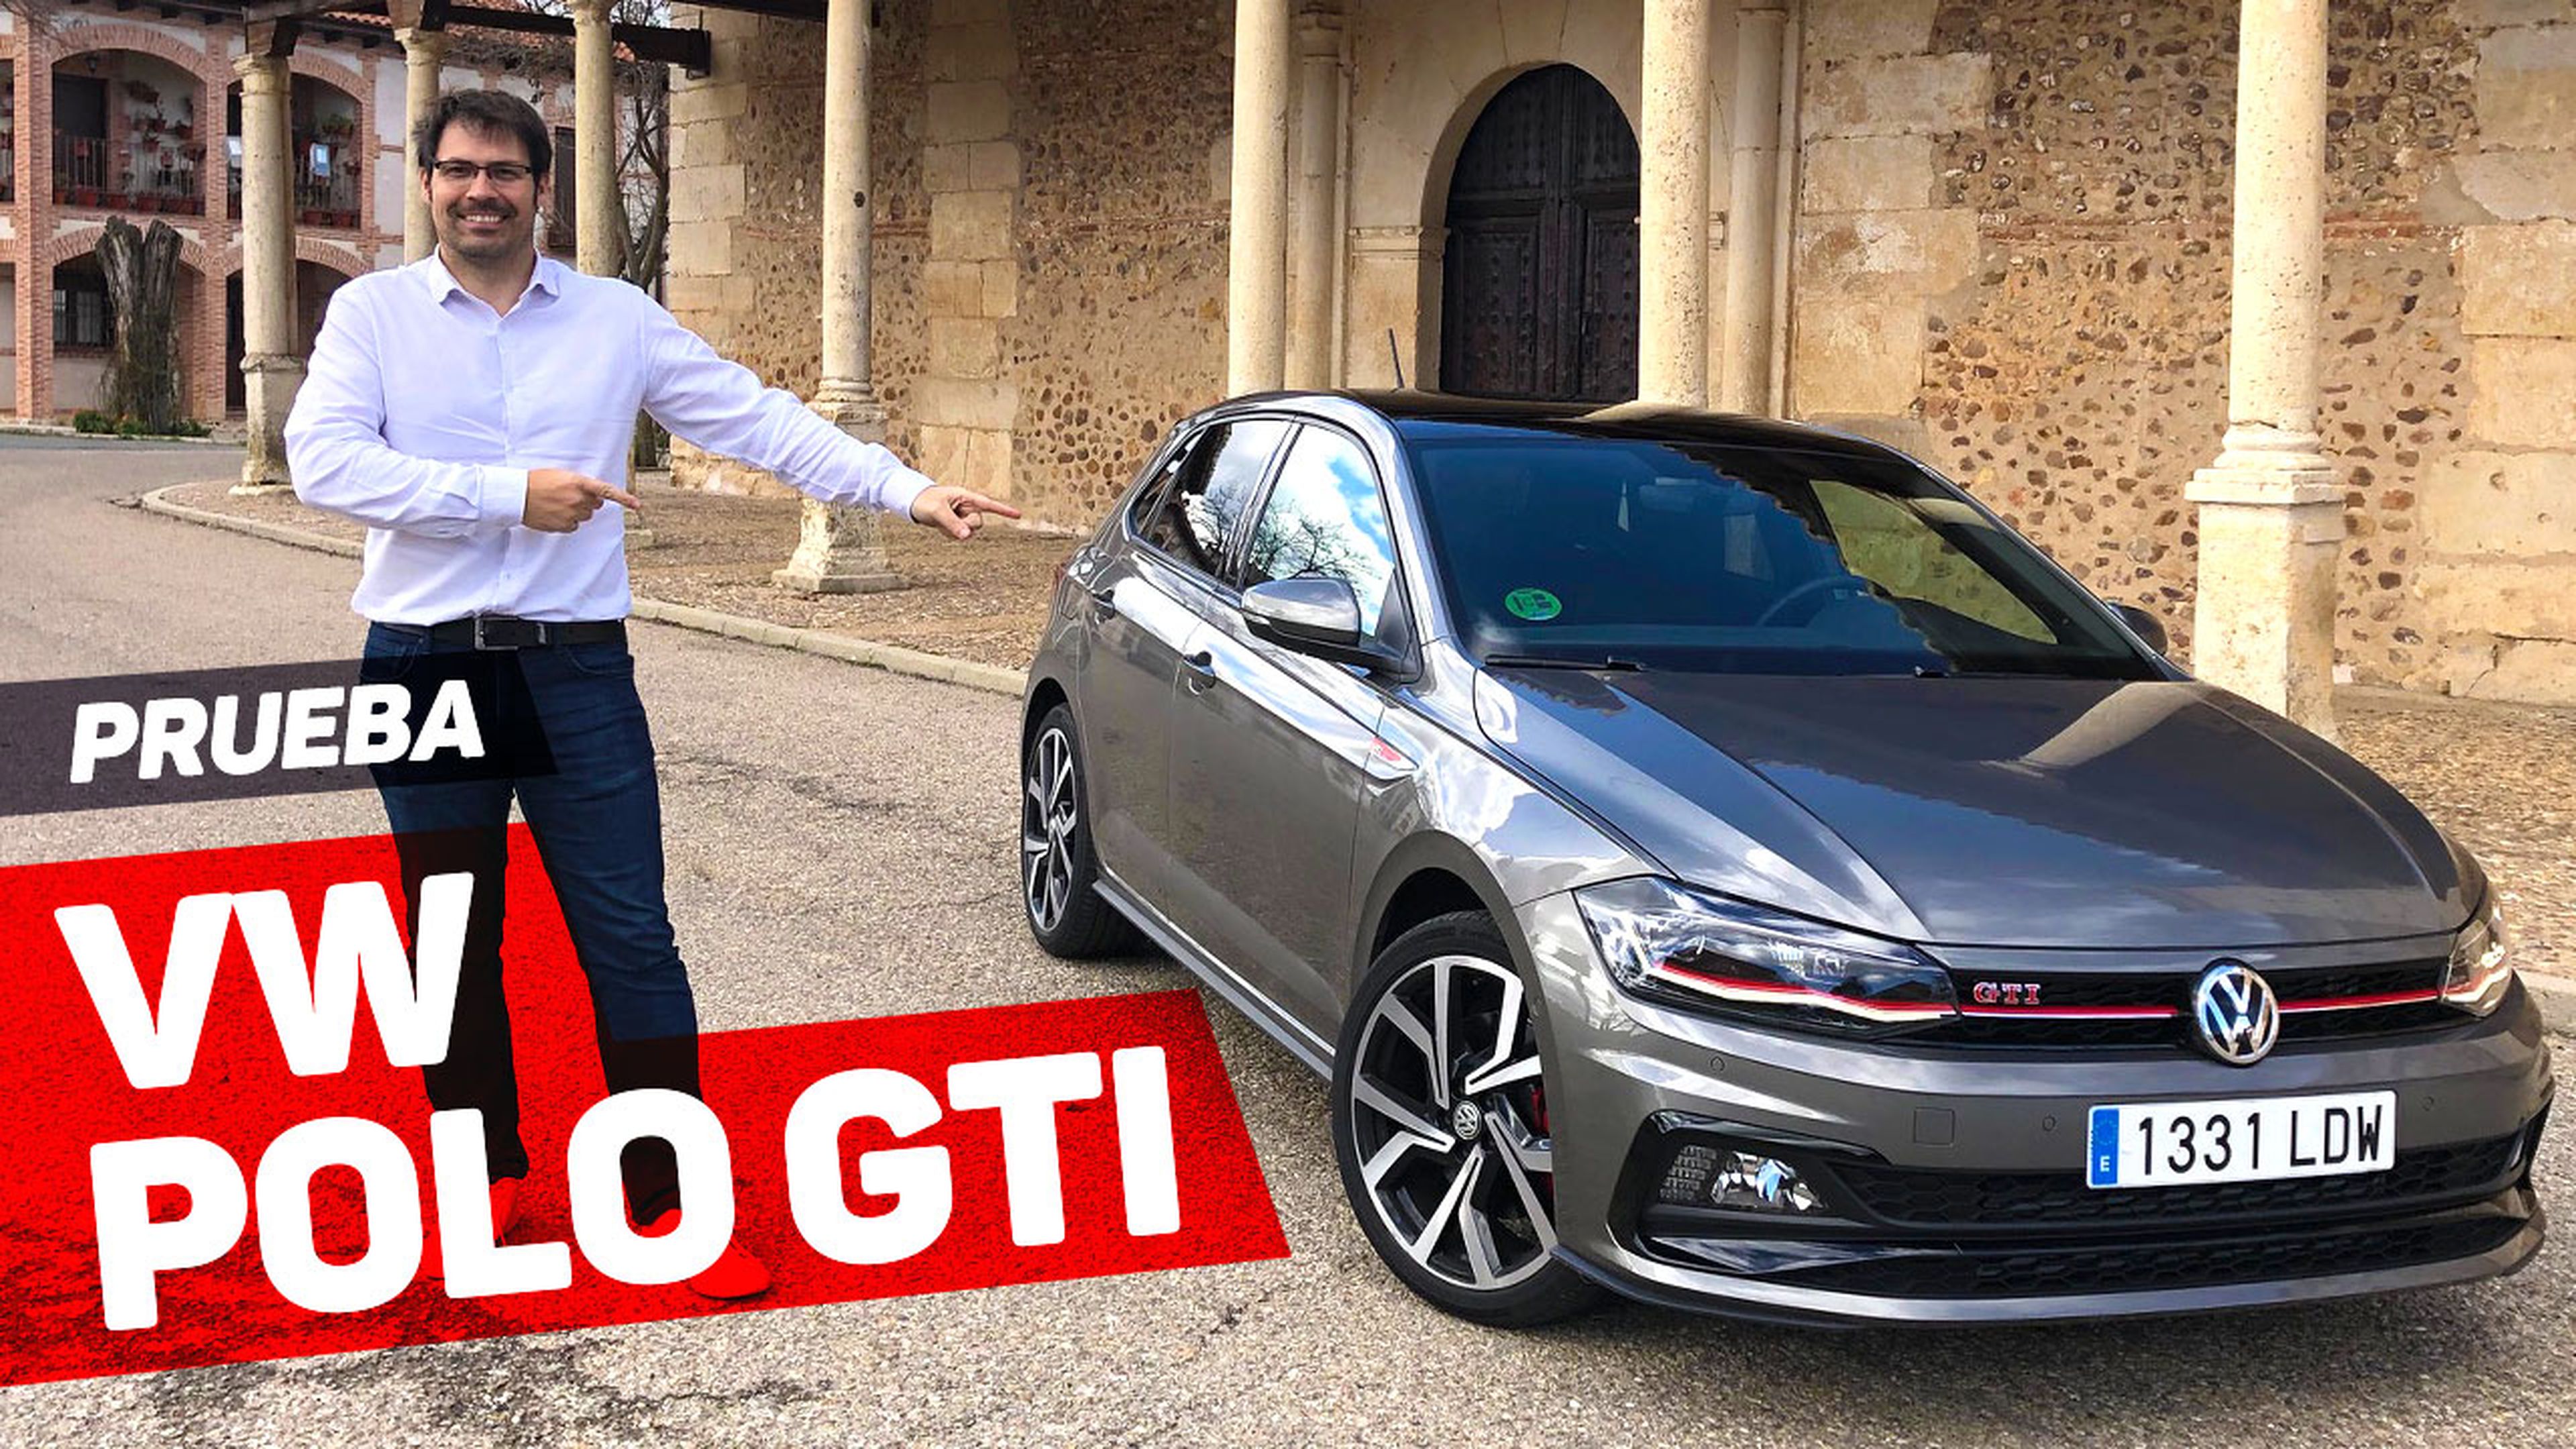 VÍDEO: Prueba VW Polo GTI